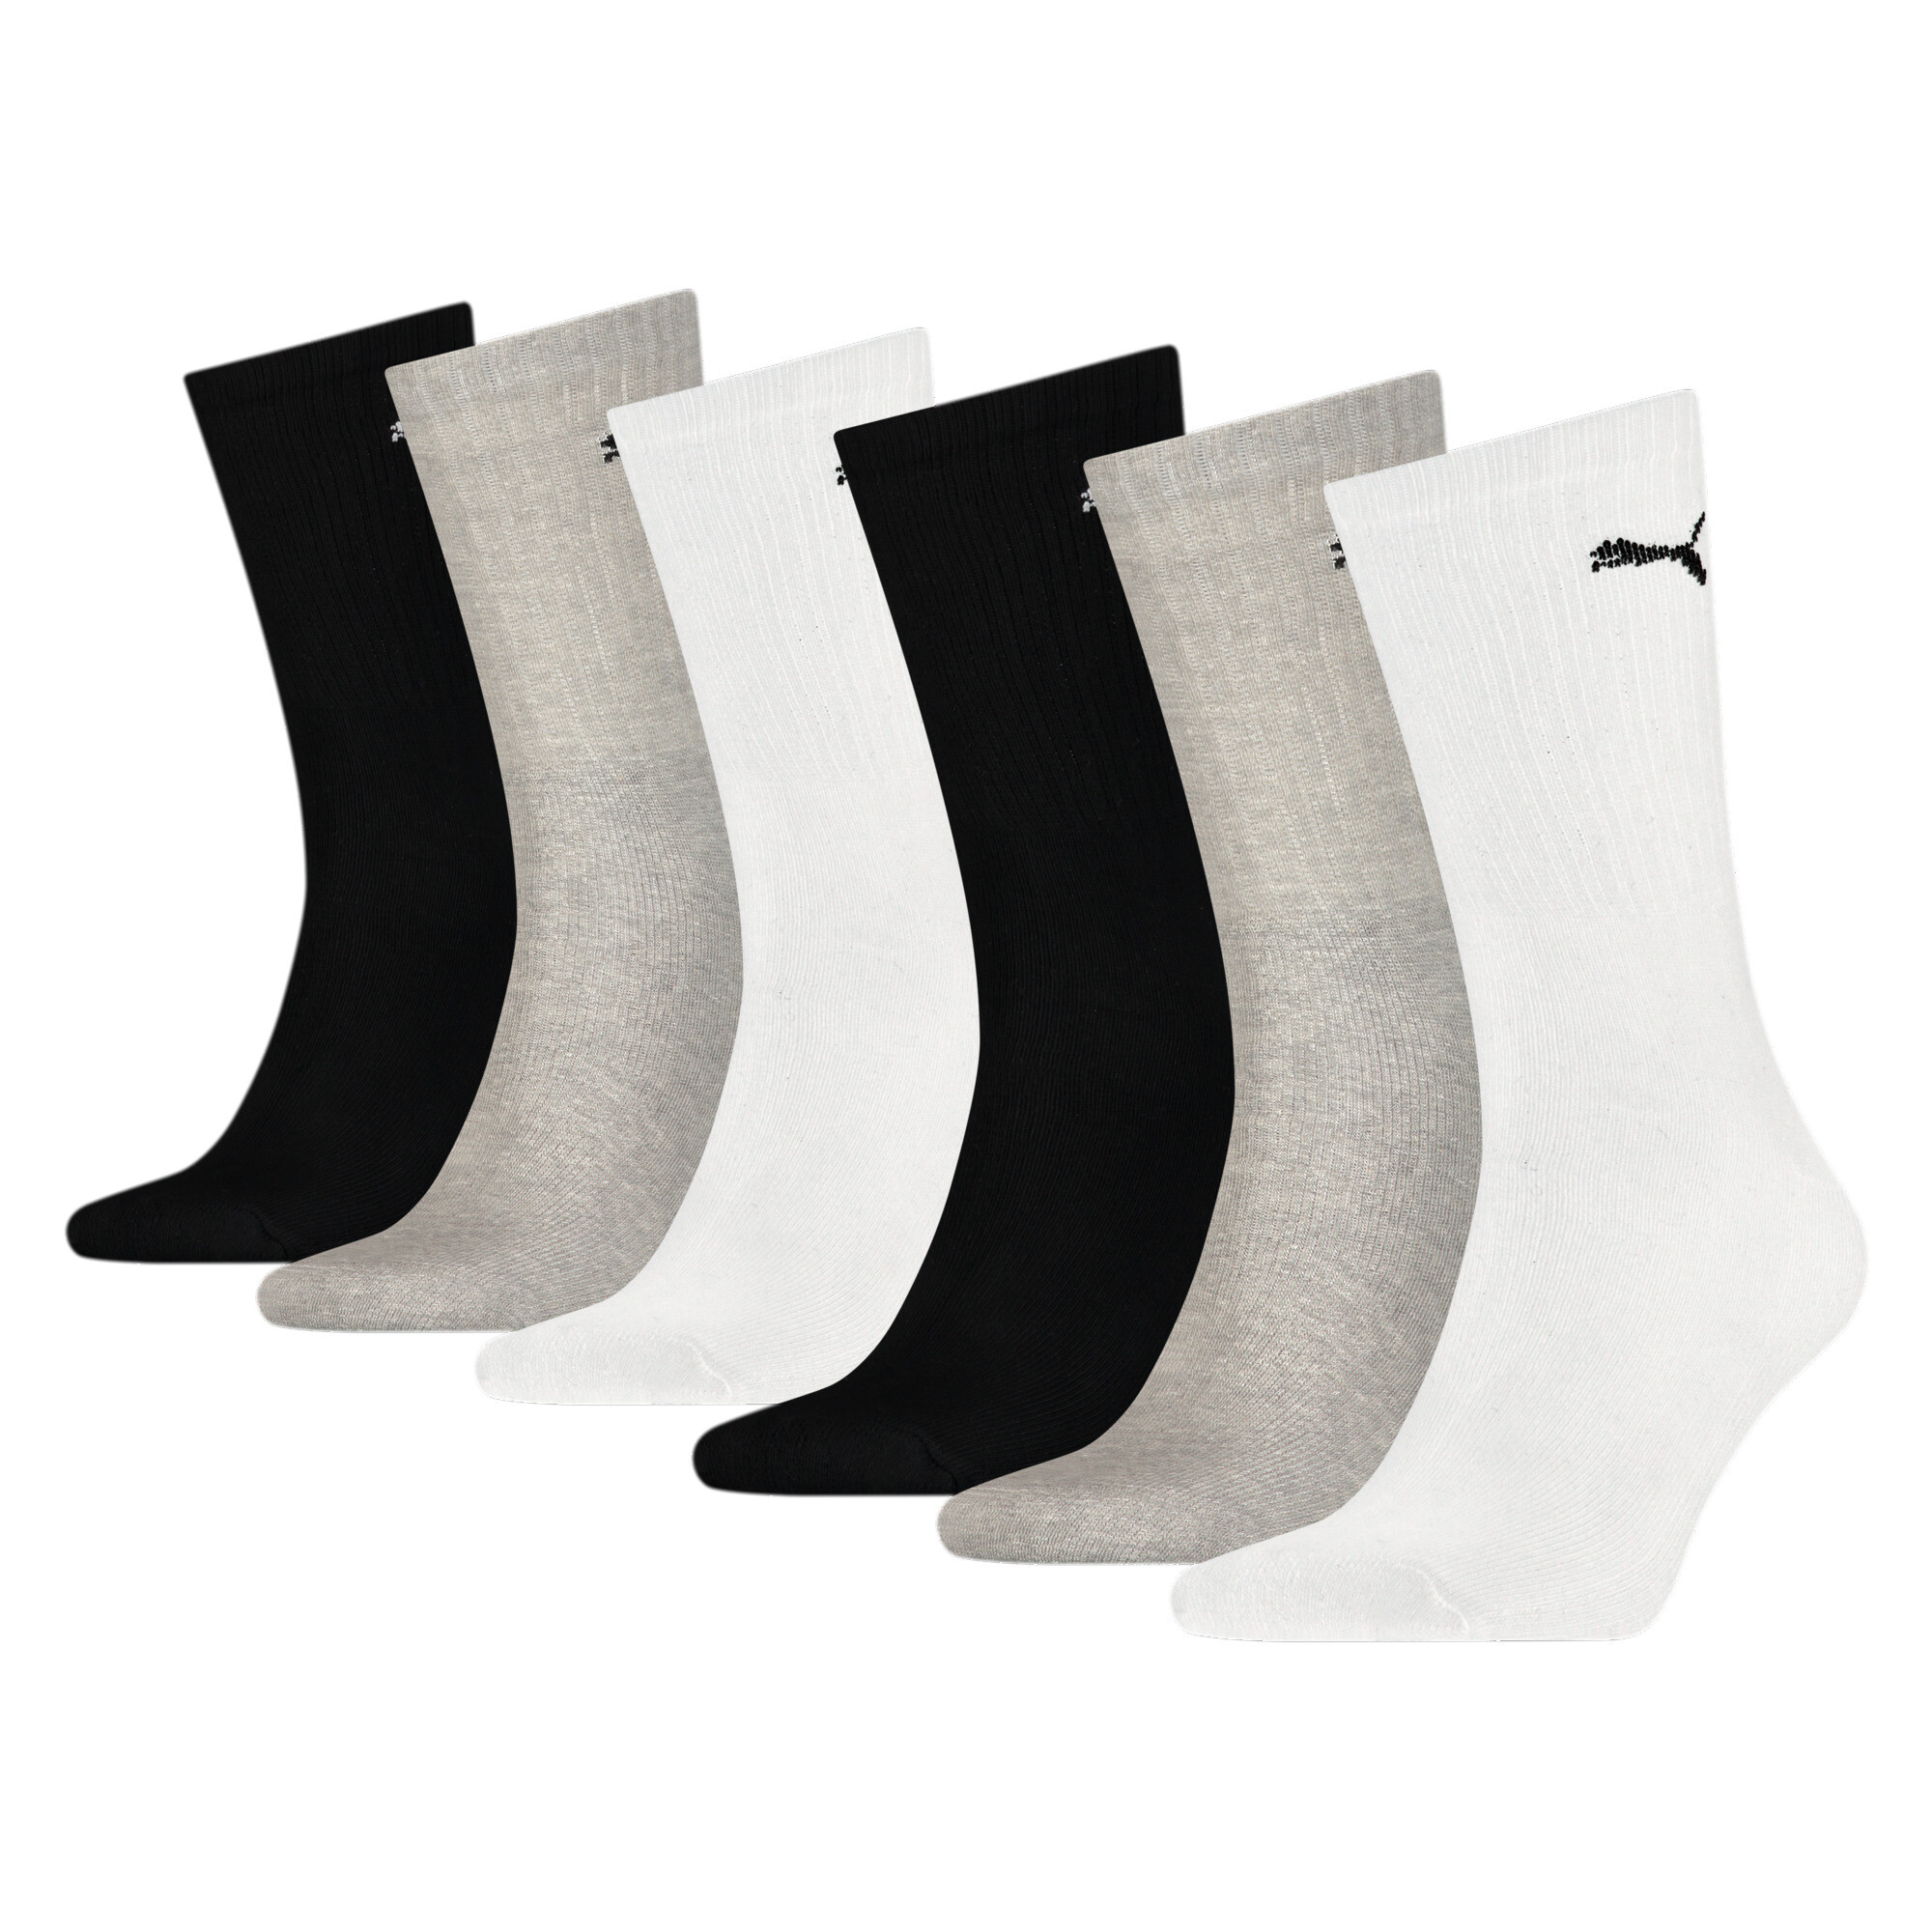 Puma Unisex Crew Shirt Socks 6 Pack, Gray, Size 35-38, Clothing